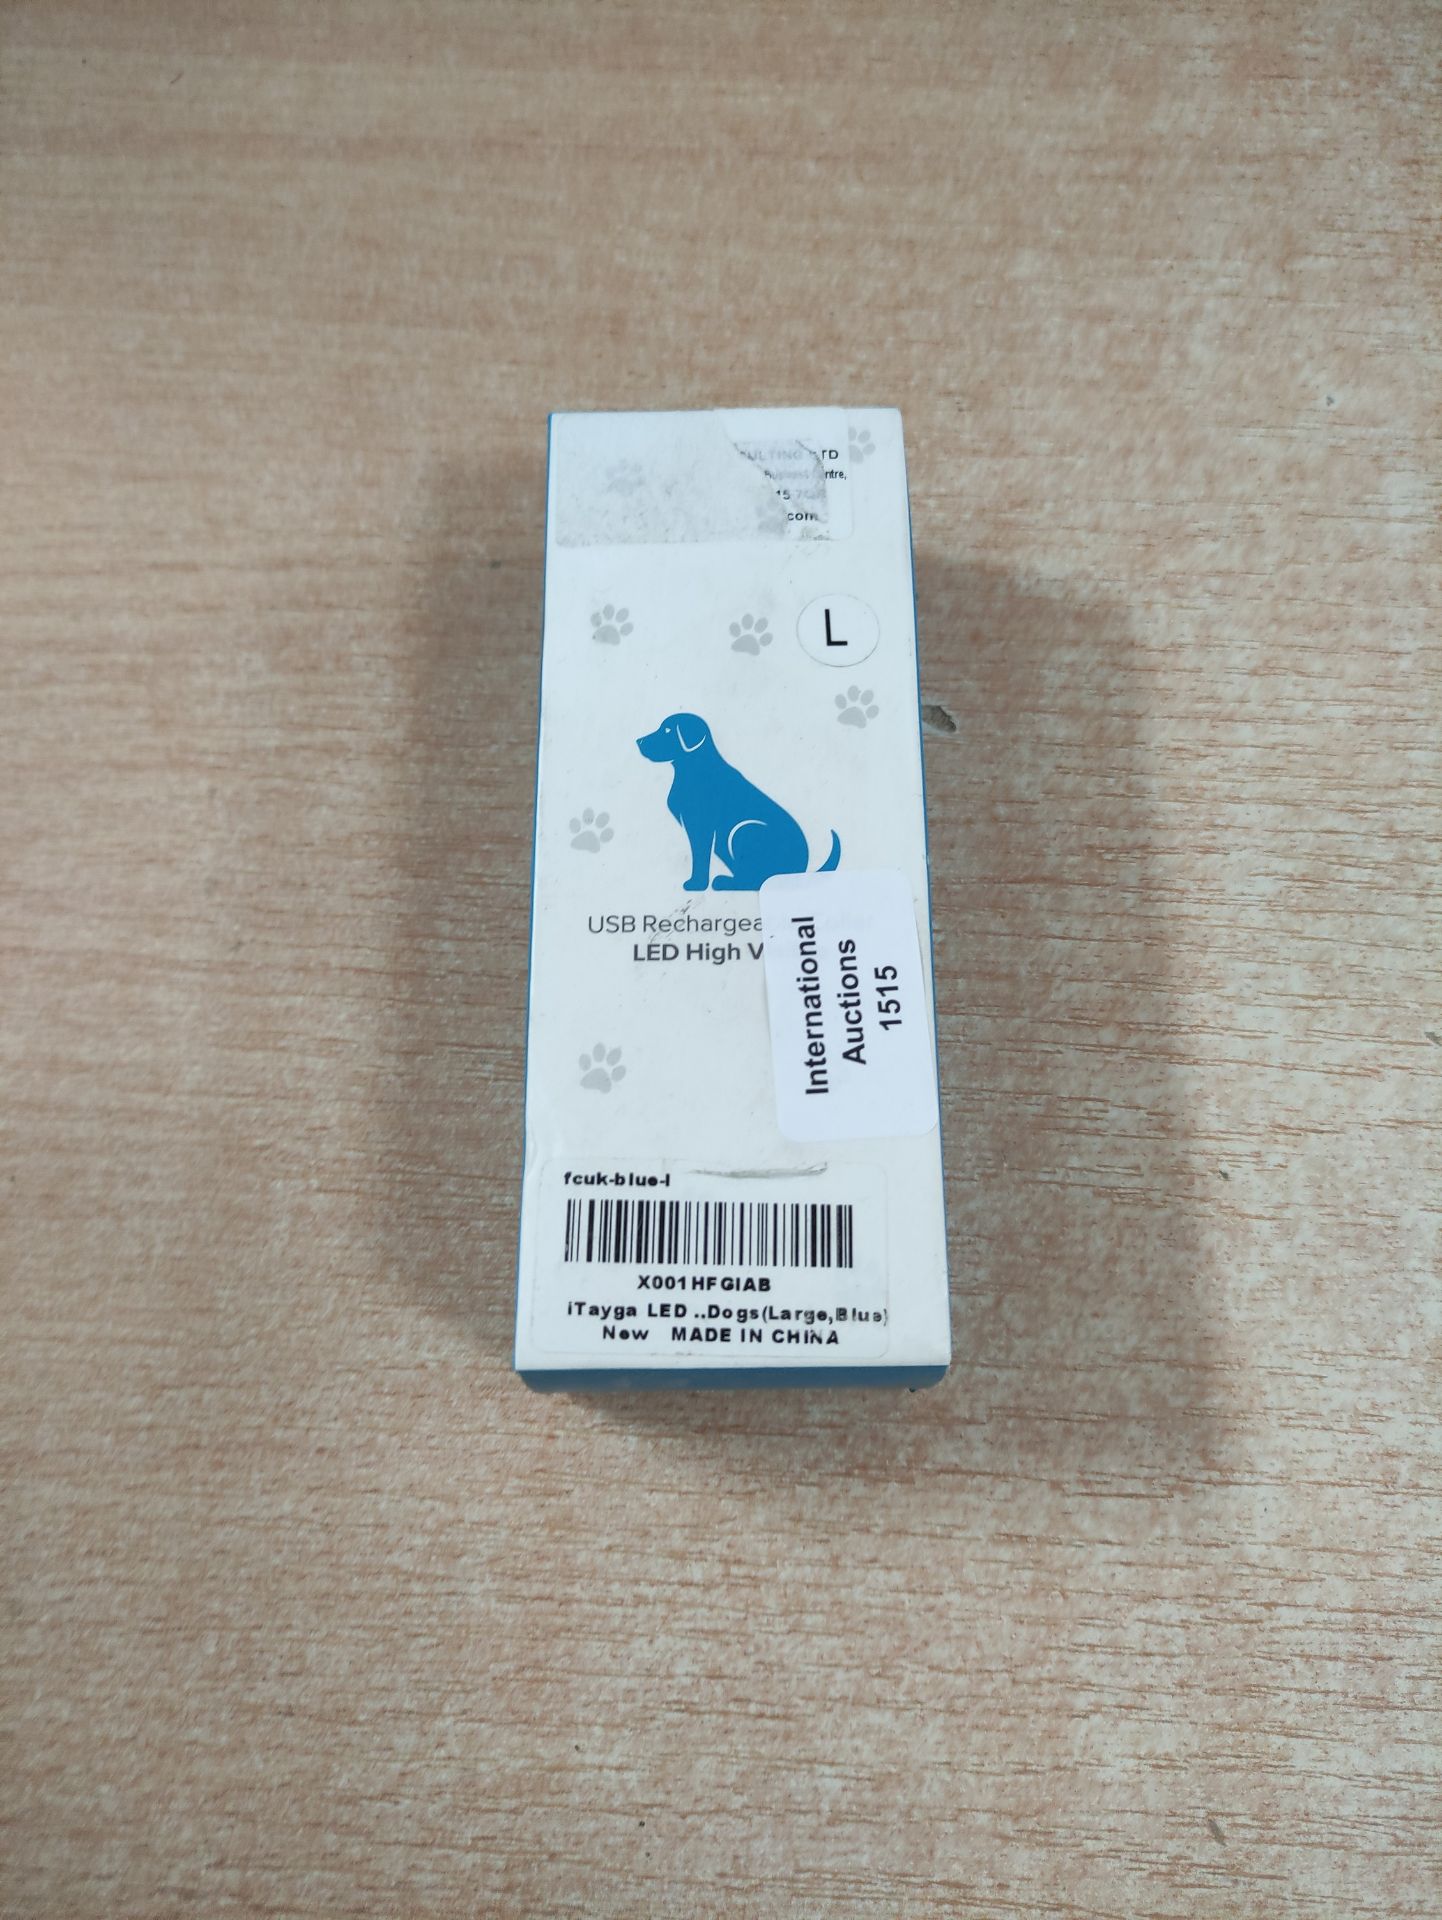 RRP £8.59 iTayga LED Dog Collar - Image 2 of 2